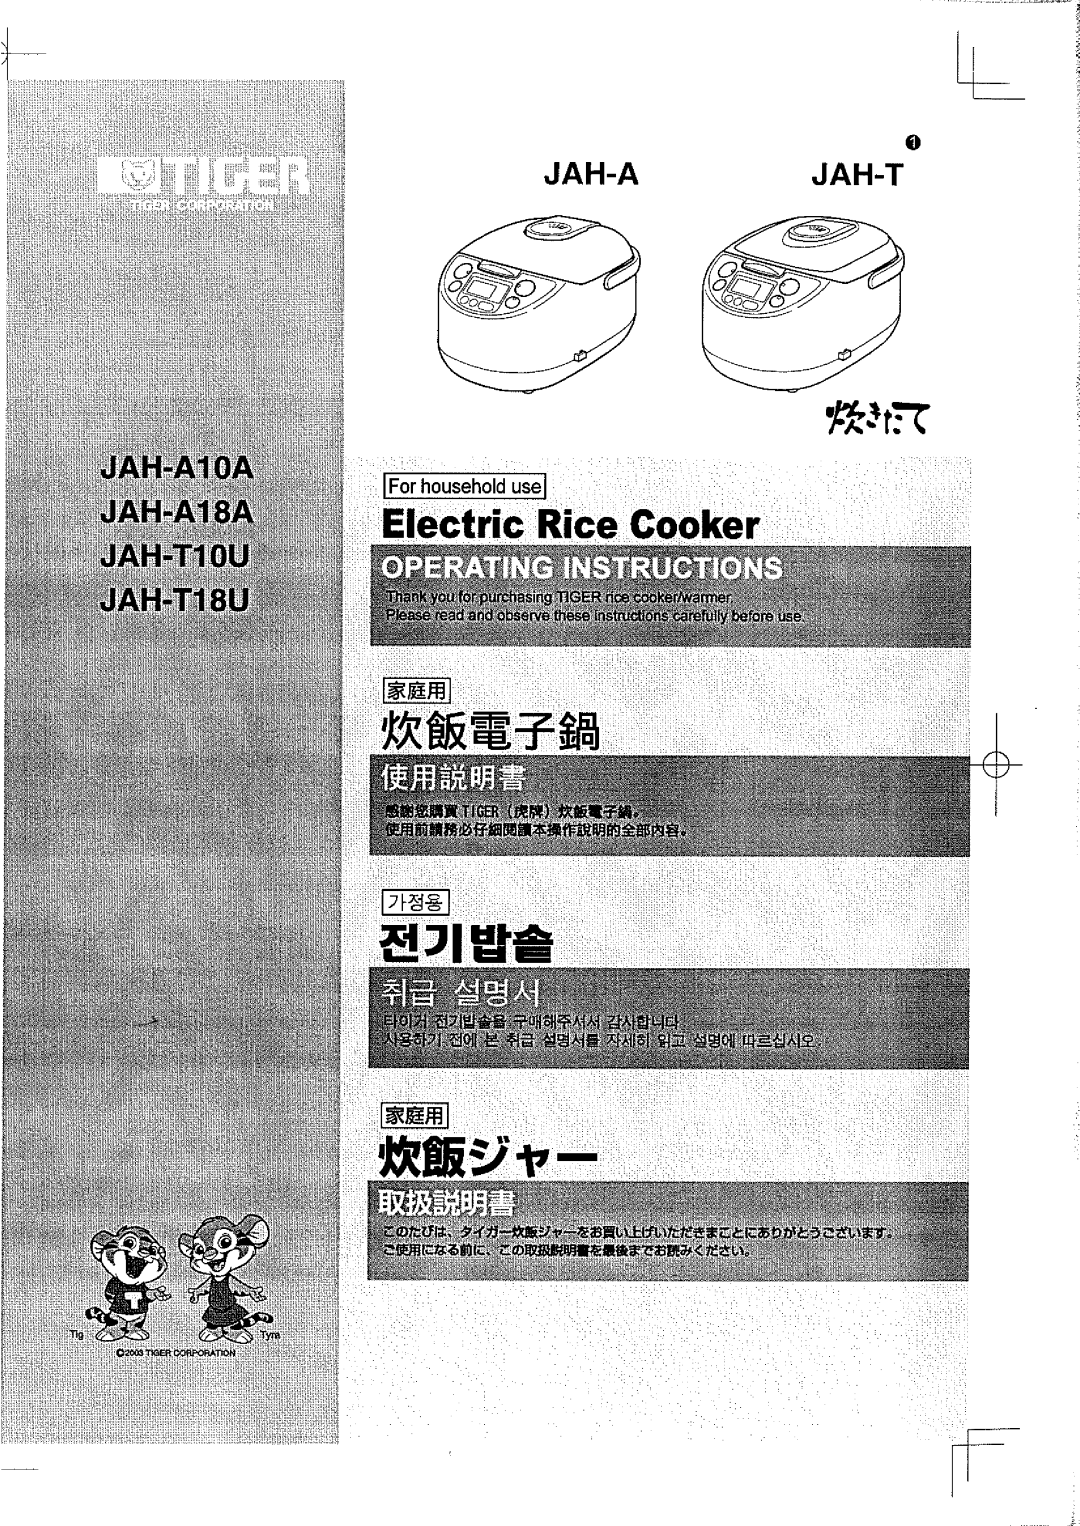 Tiger Products Co., Ltd JAH-A18A, JAH-T18U, JAH-A10A, JAH-T10U manual 